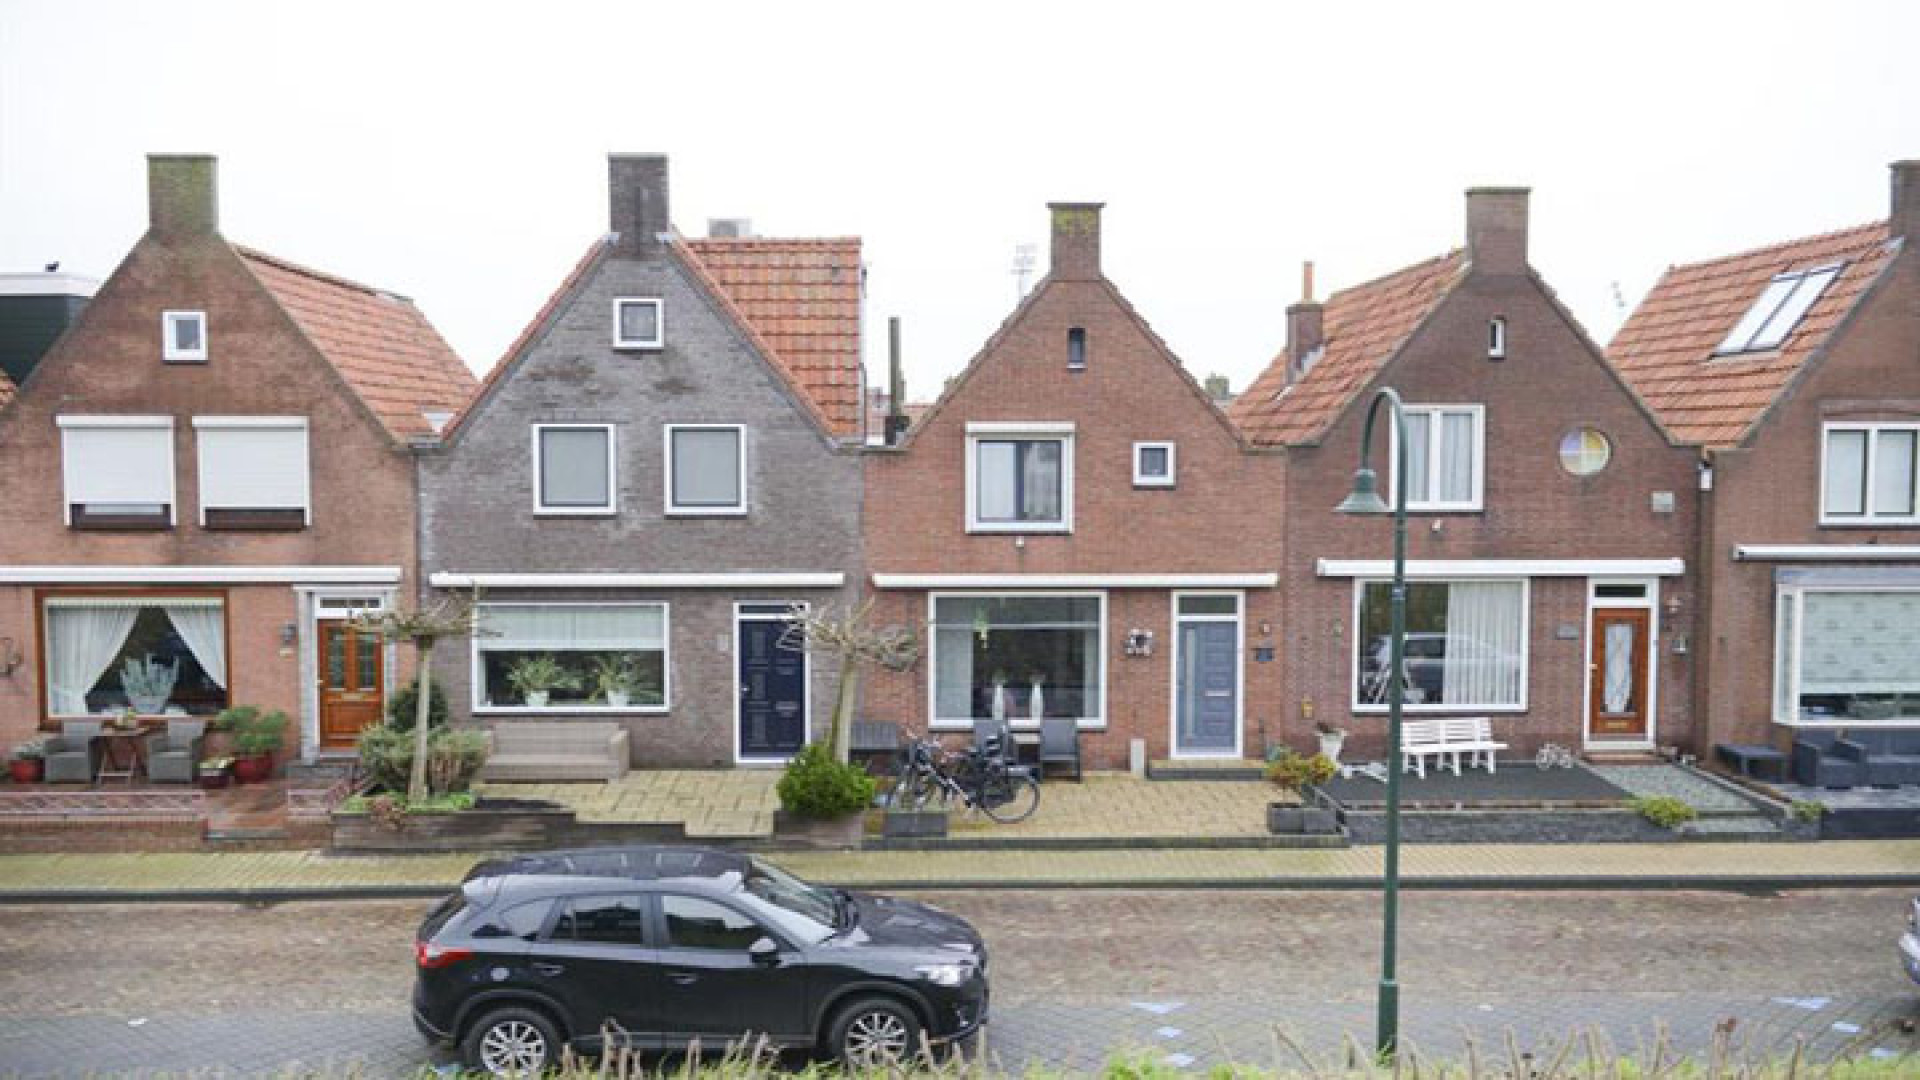 Funderingsprobleem nekt verkoop Volendamse huis van Yolanthe. Zie foto's 22